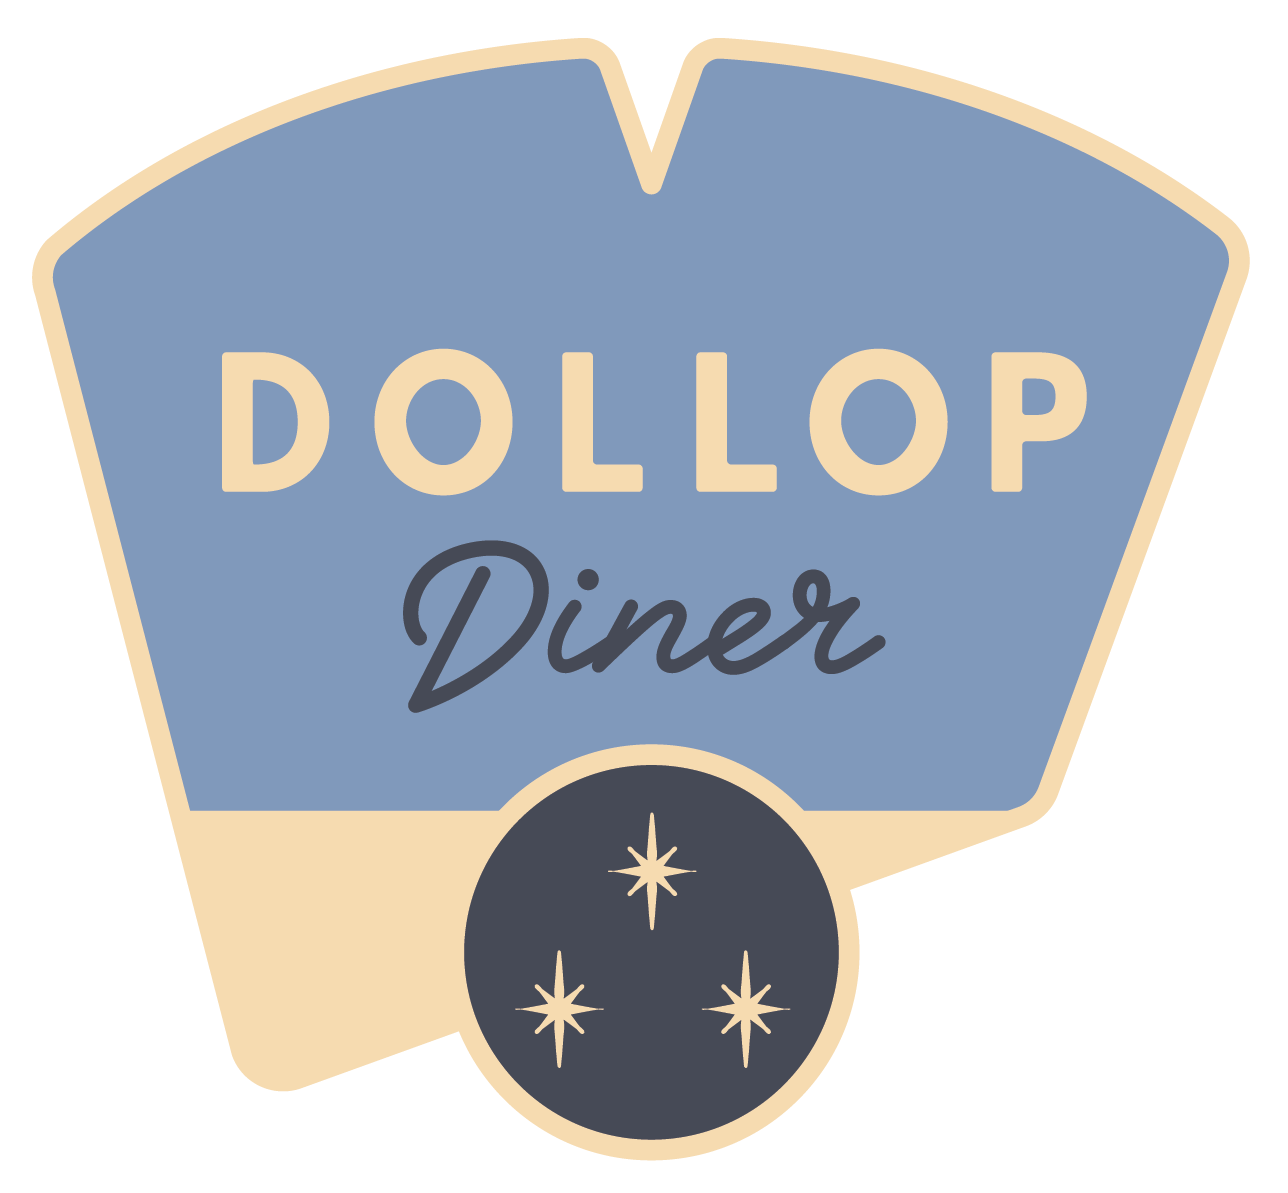 Dollop Diner